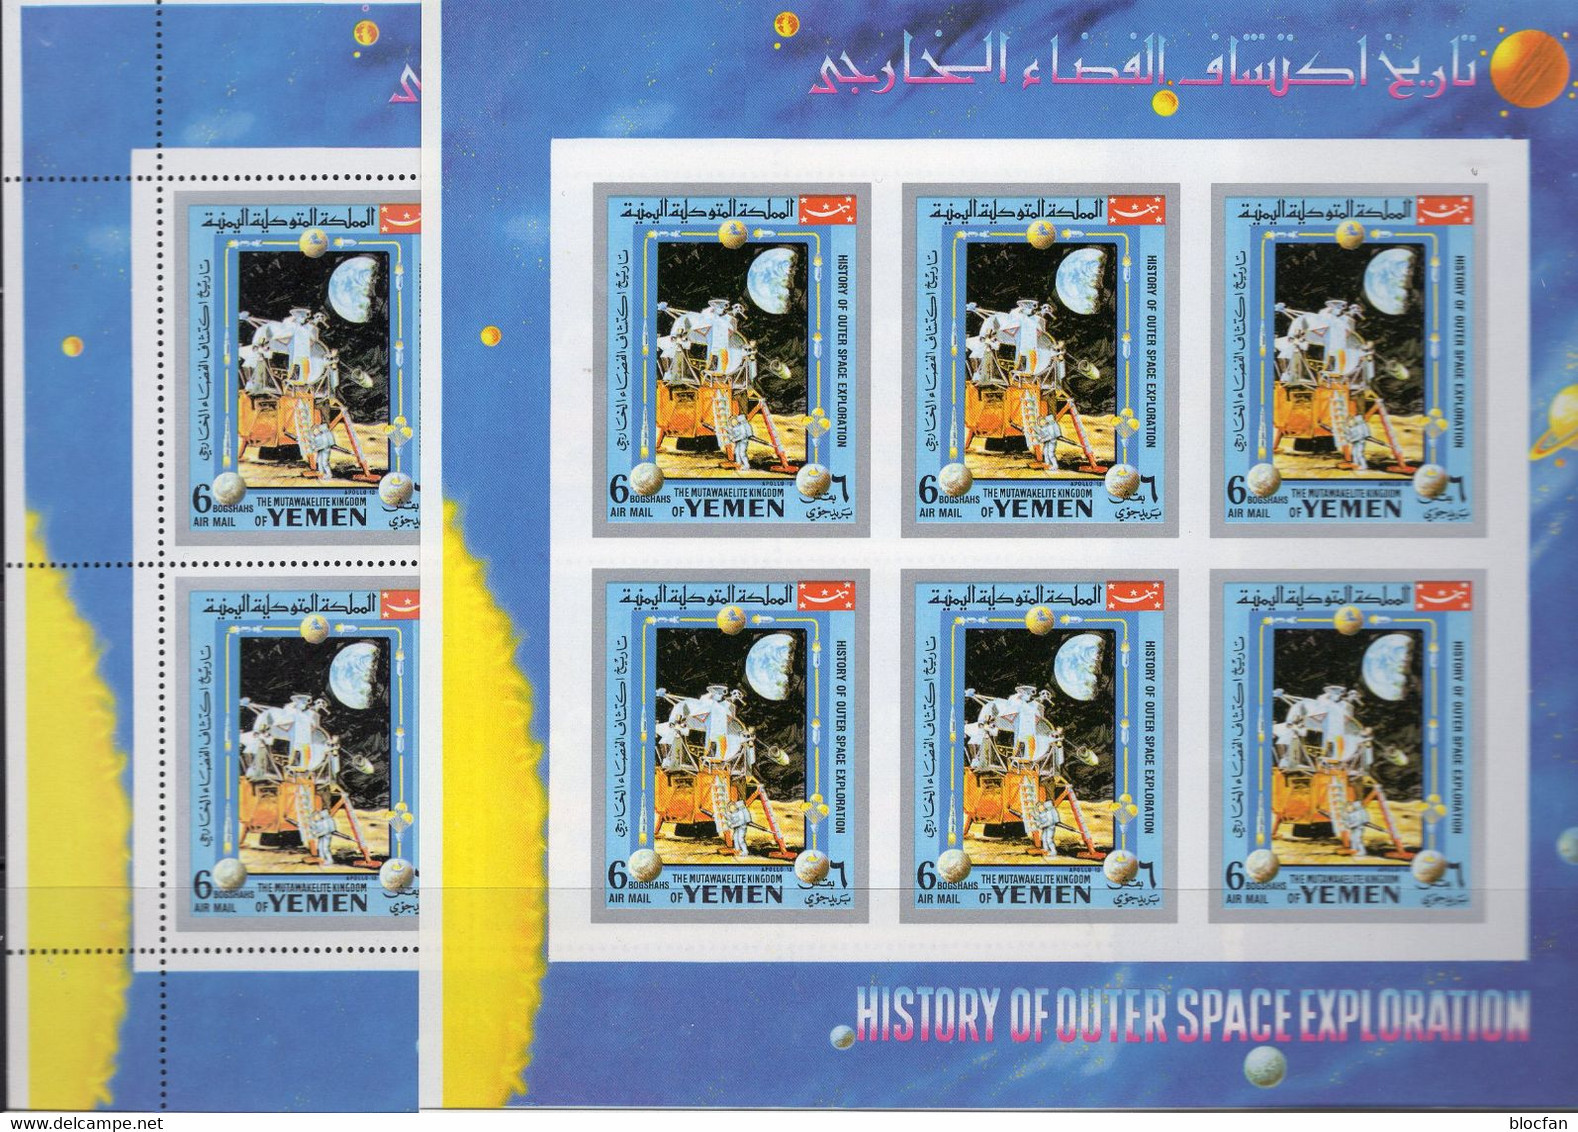 Raumflug Zum Mond Jemen 888 Kleinbogen A/B ** 12€ Fähre Apollo 11 Sheets S/s Sheetlets Bf History Space Exploration - Perforiert/Gezähnt